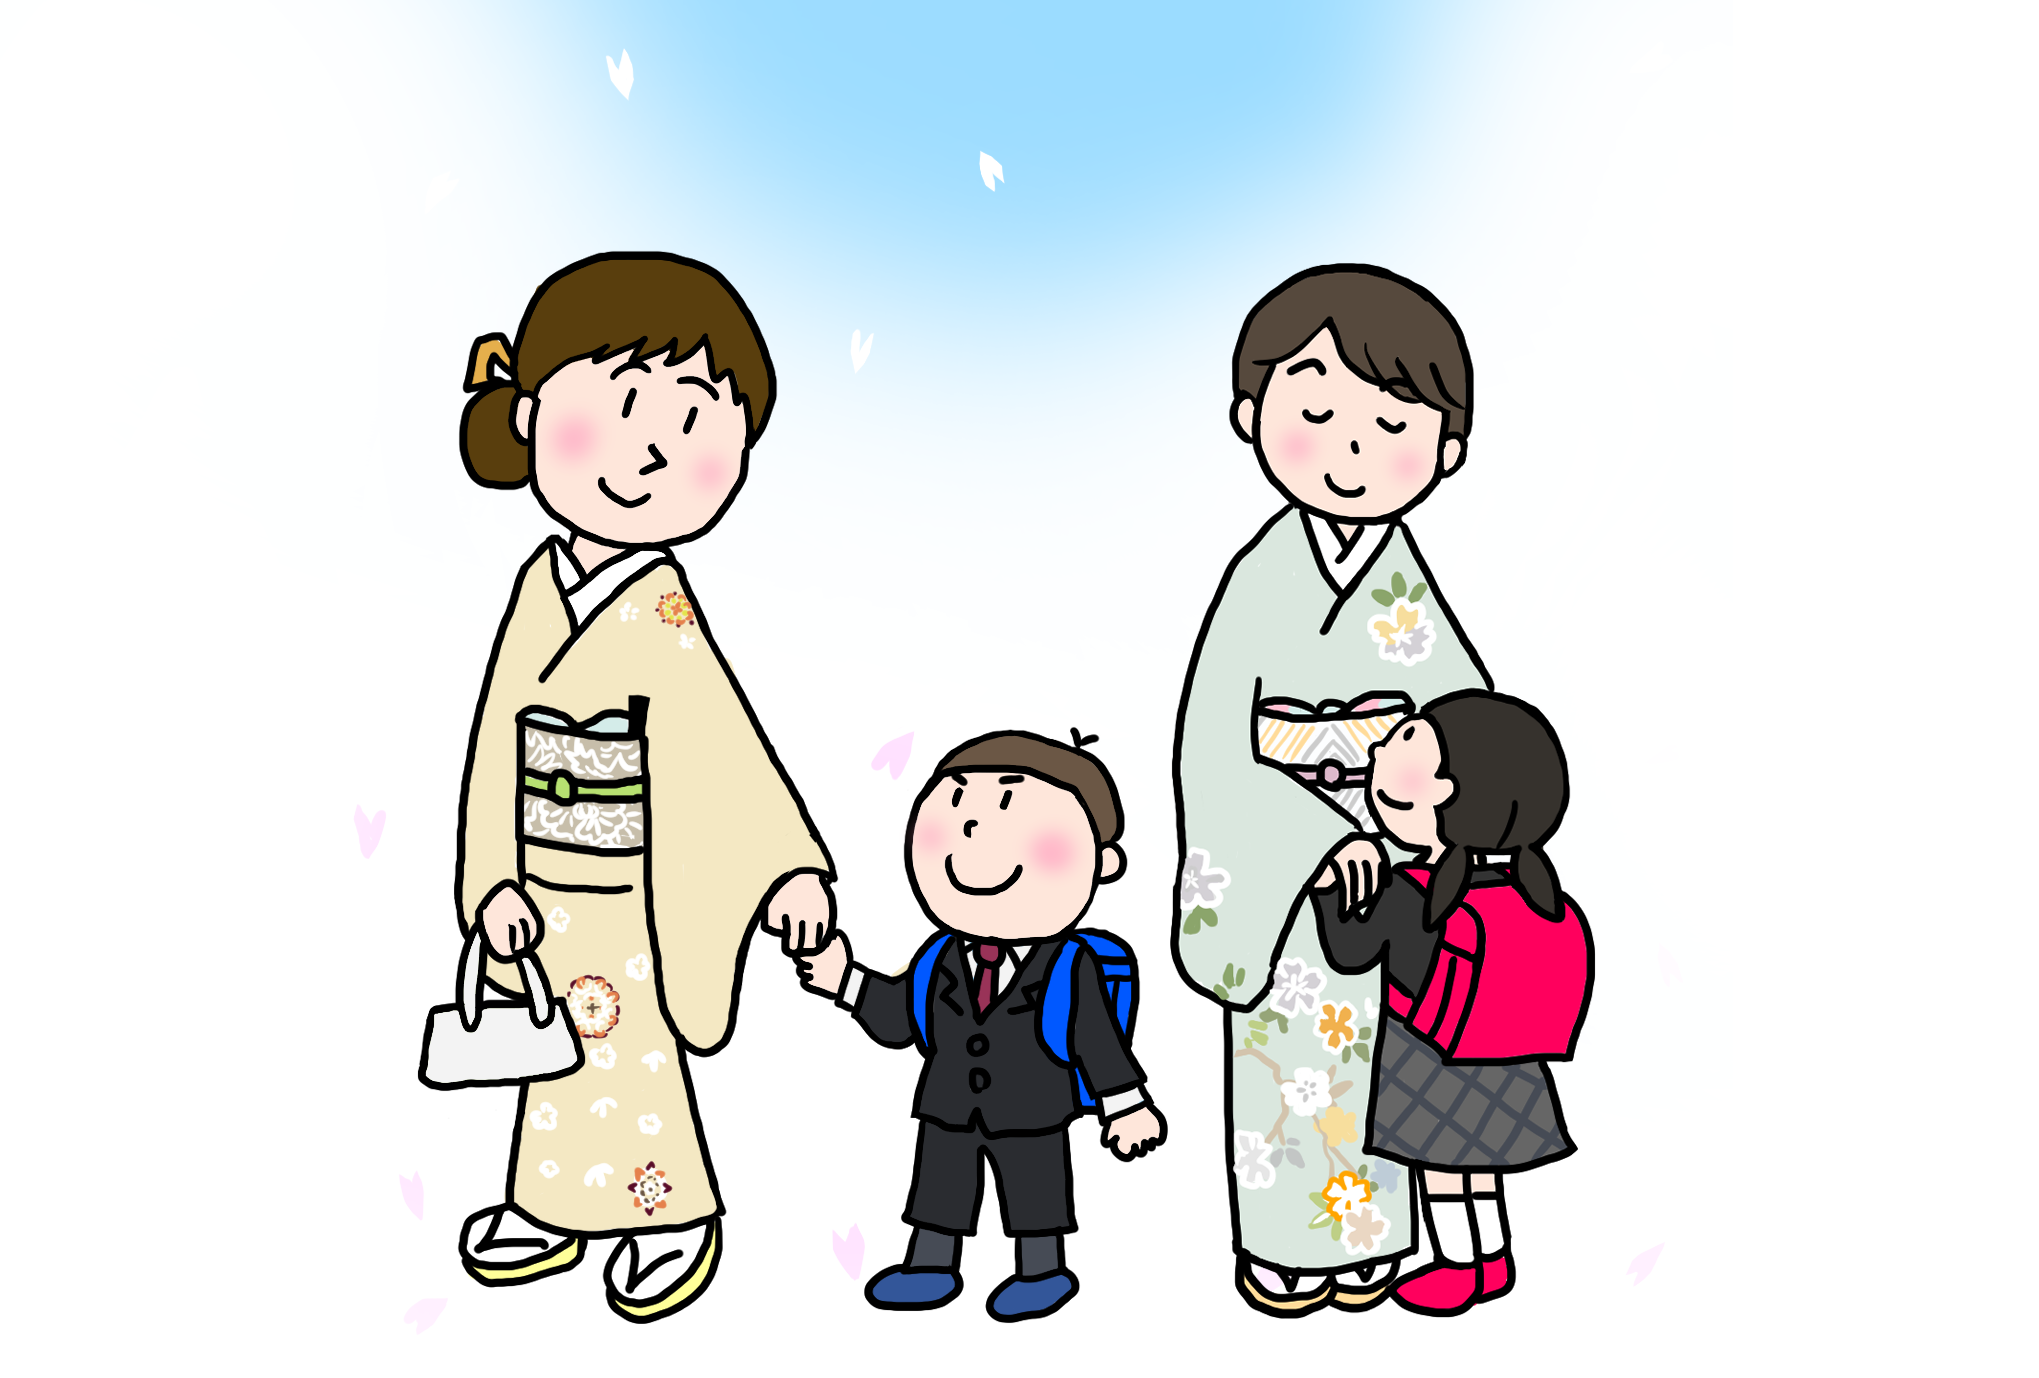 卒業式 入学式の 母きもの きくちいまが 今考えるきもののこと 着物 和 京都に関する情報ならきものと